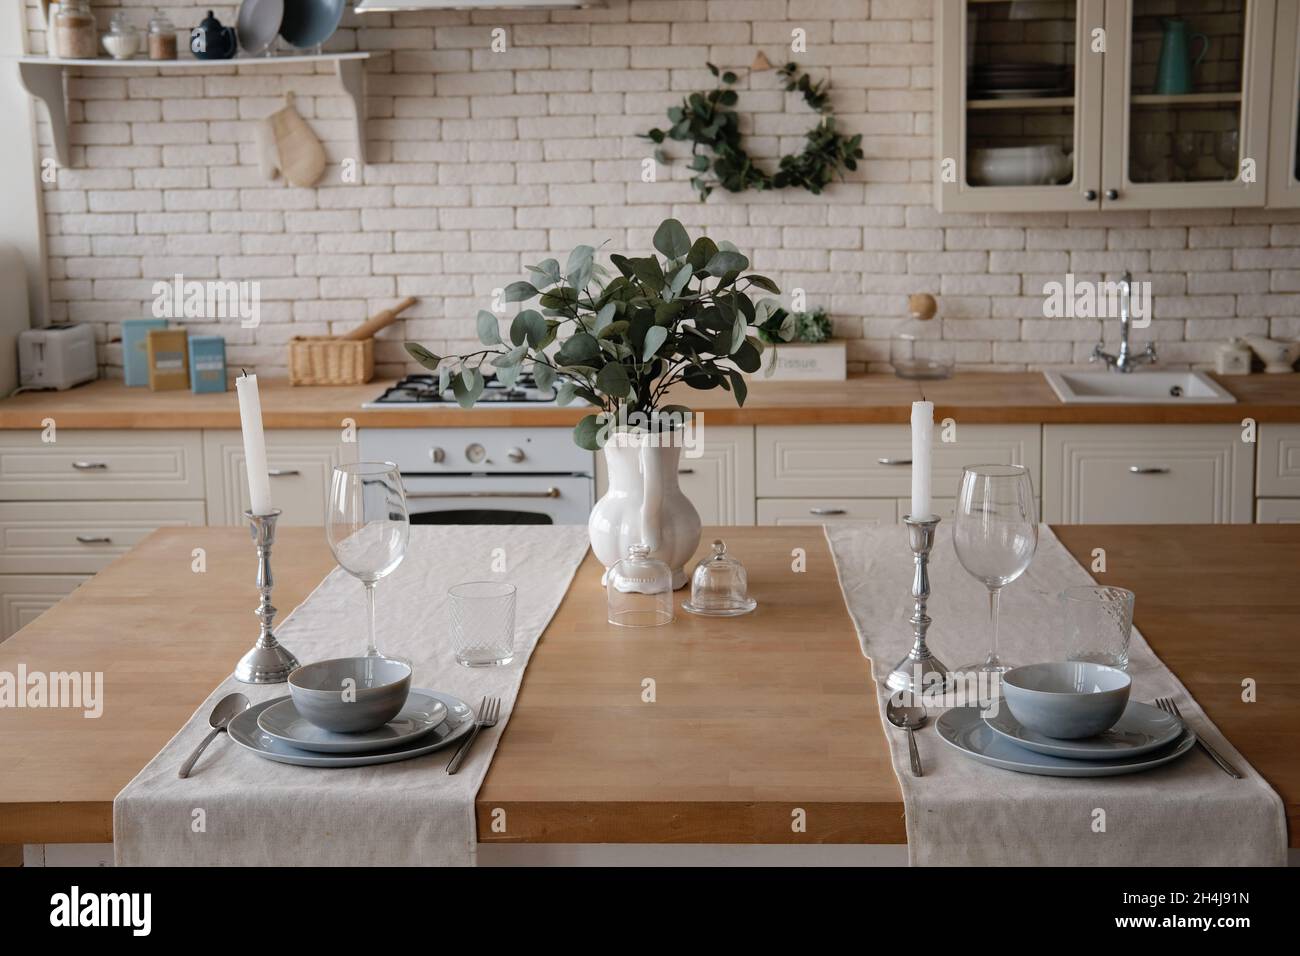 Modernes, stilvolles, skandinavisches Kücheninterieur aus weißem und hellem  Holz mit Küchenzubehör. Tischservierung Stockfotografie - Alamy